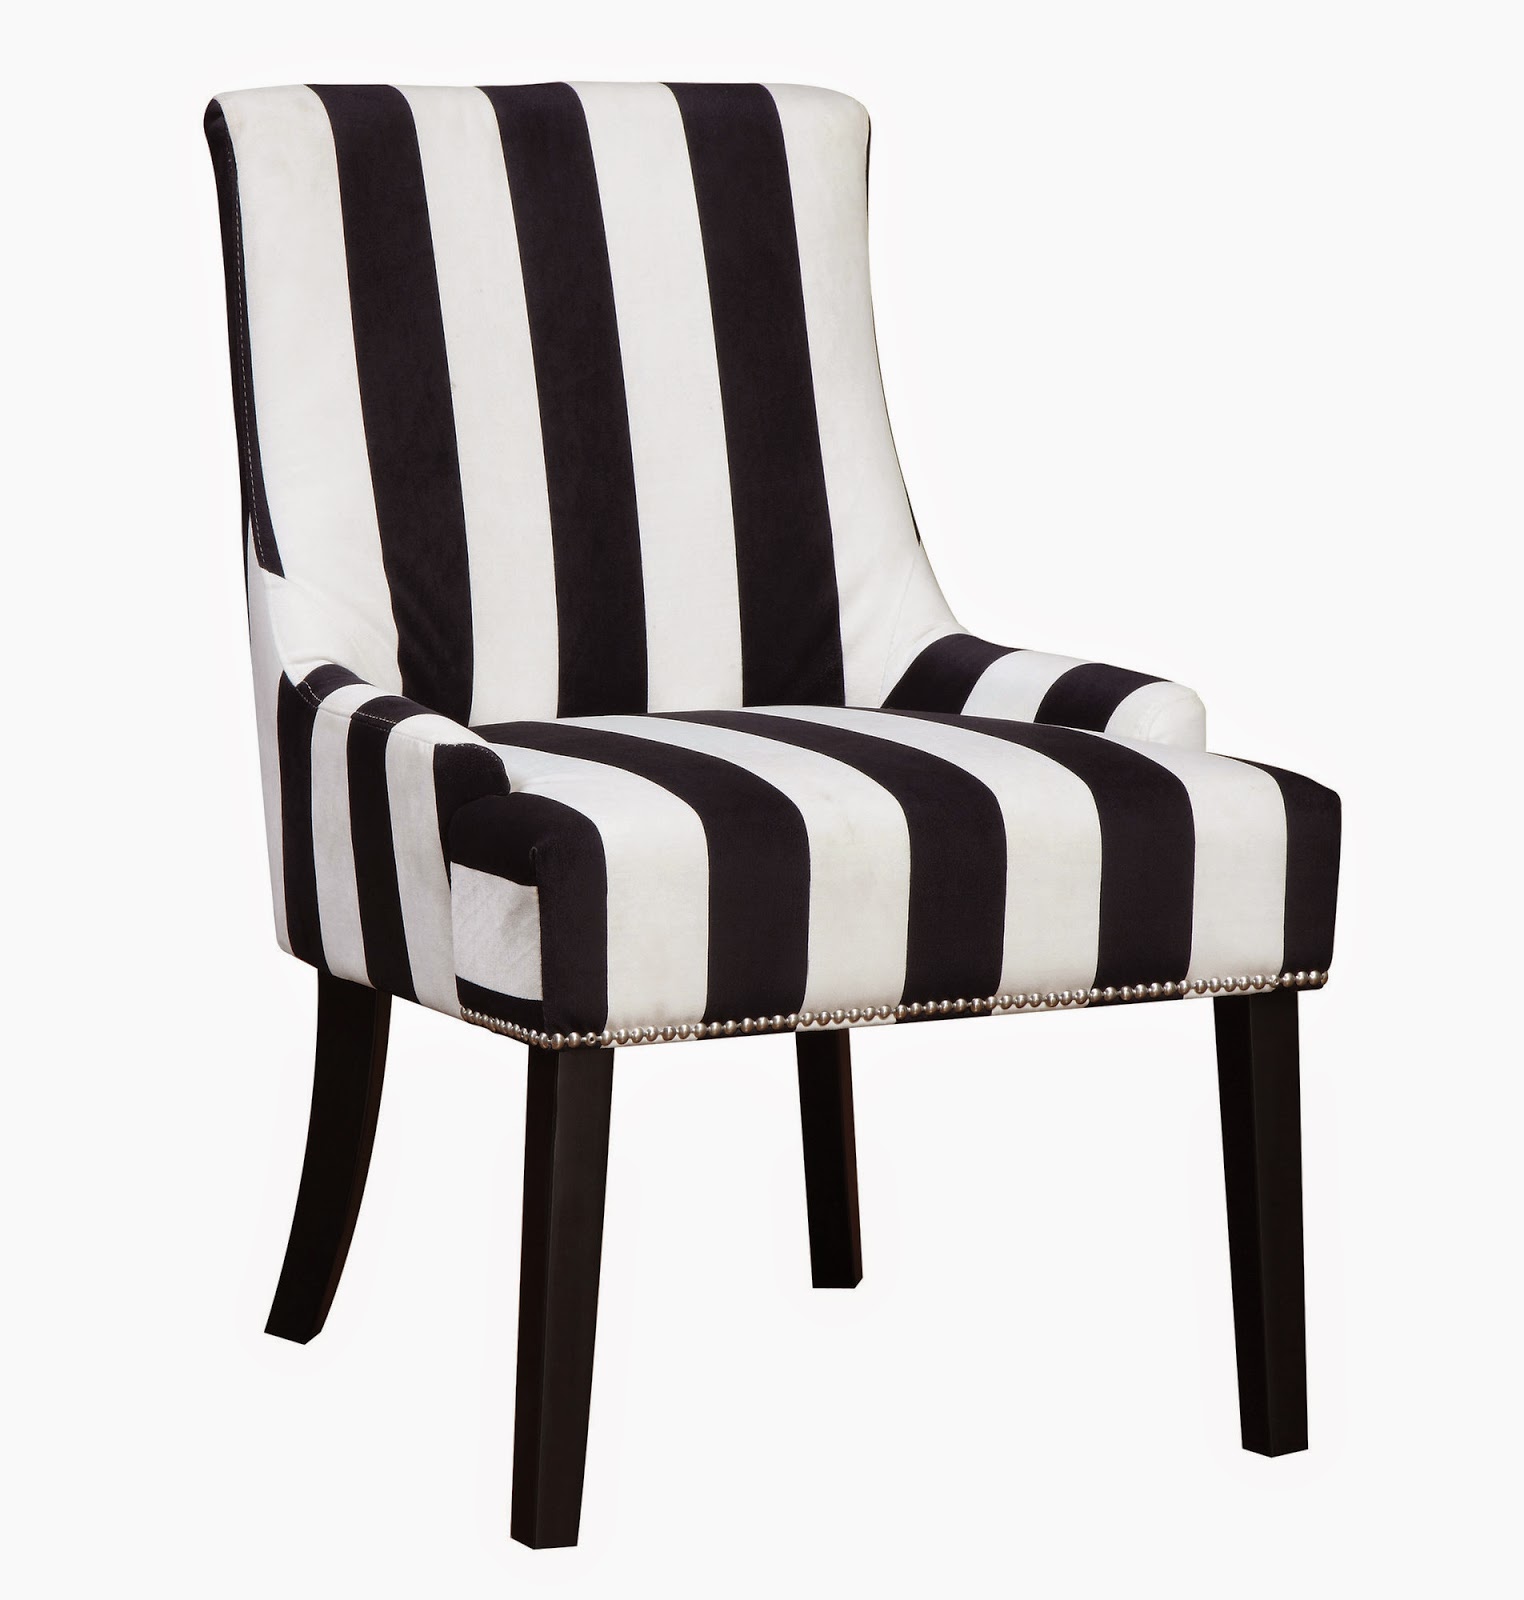  Striped Chair